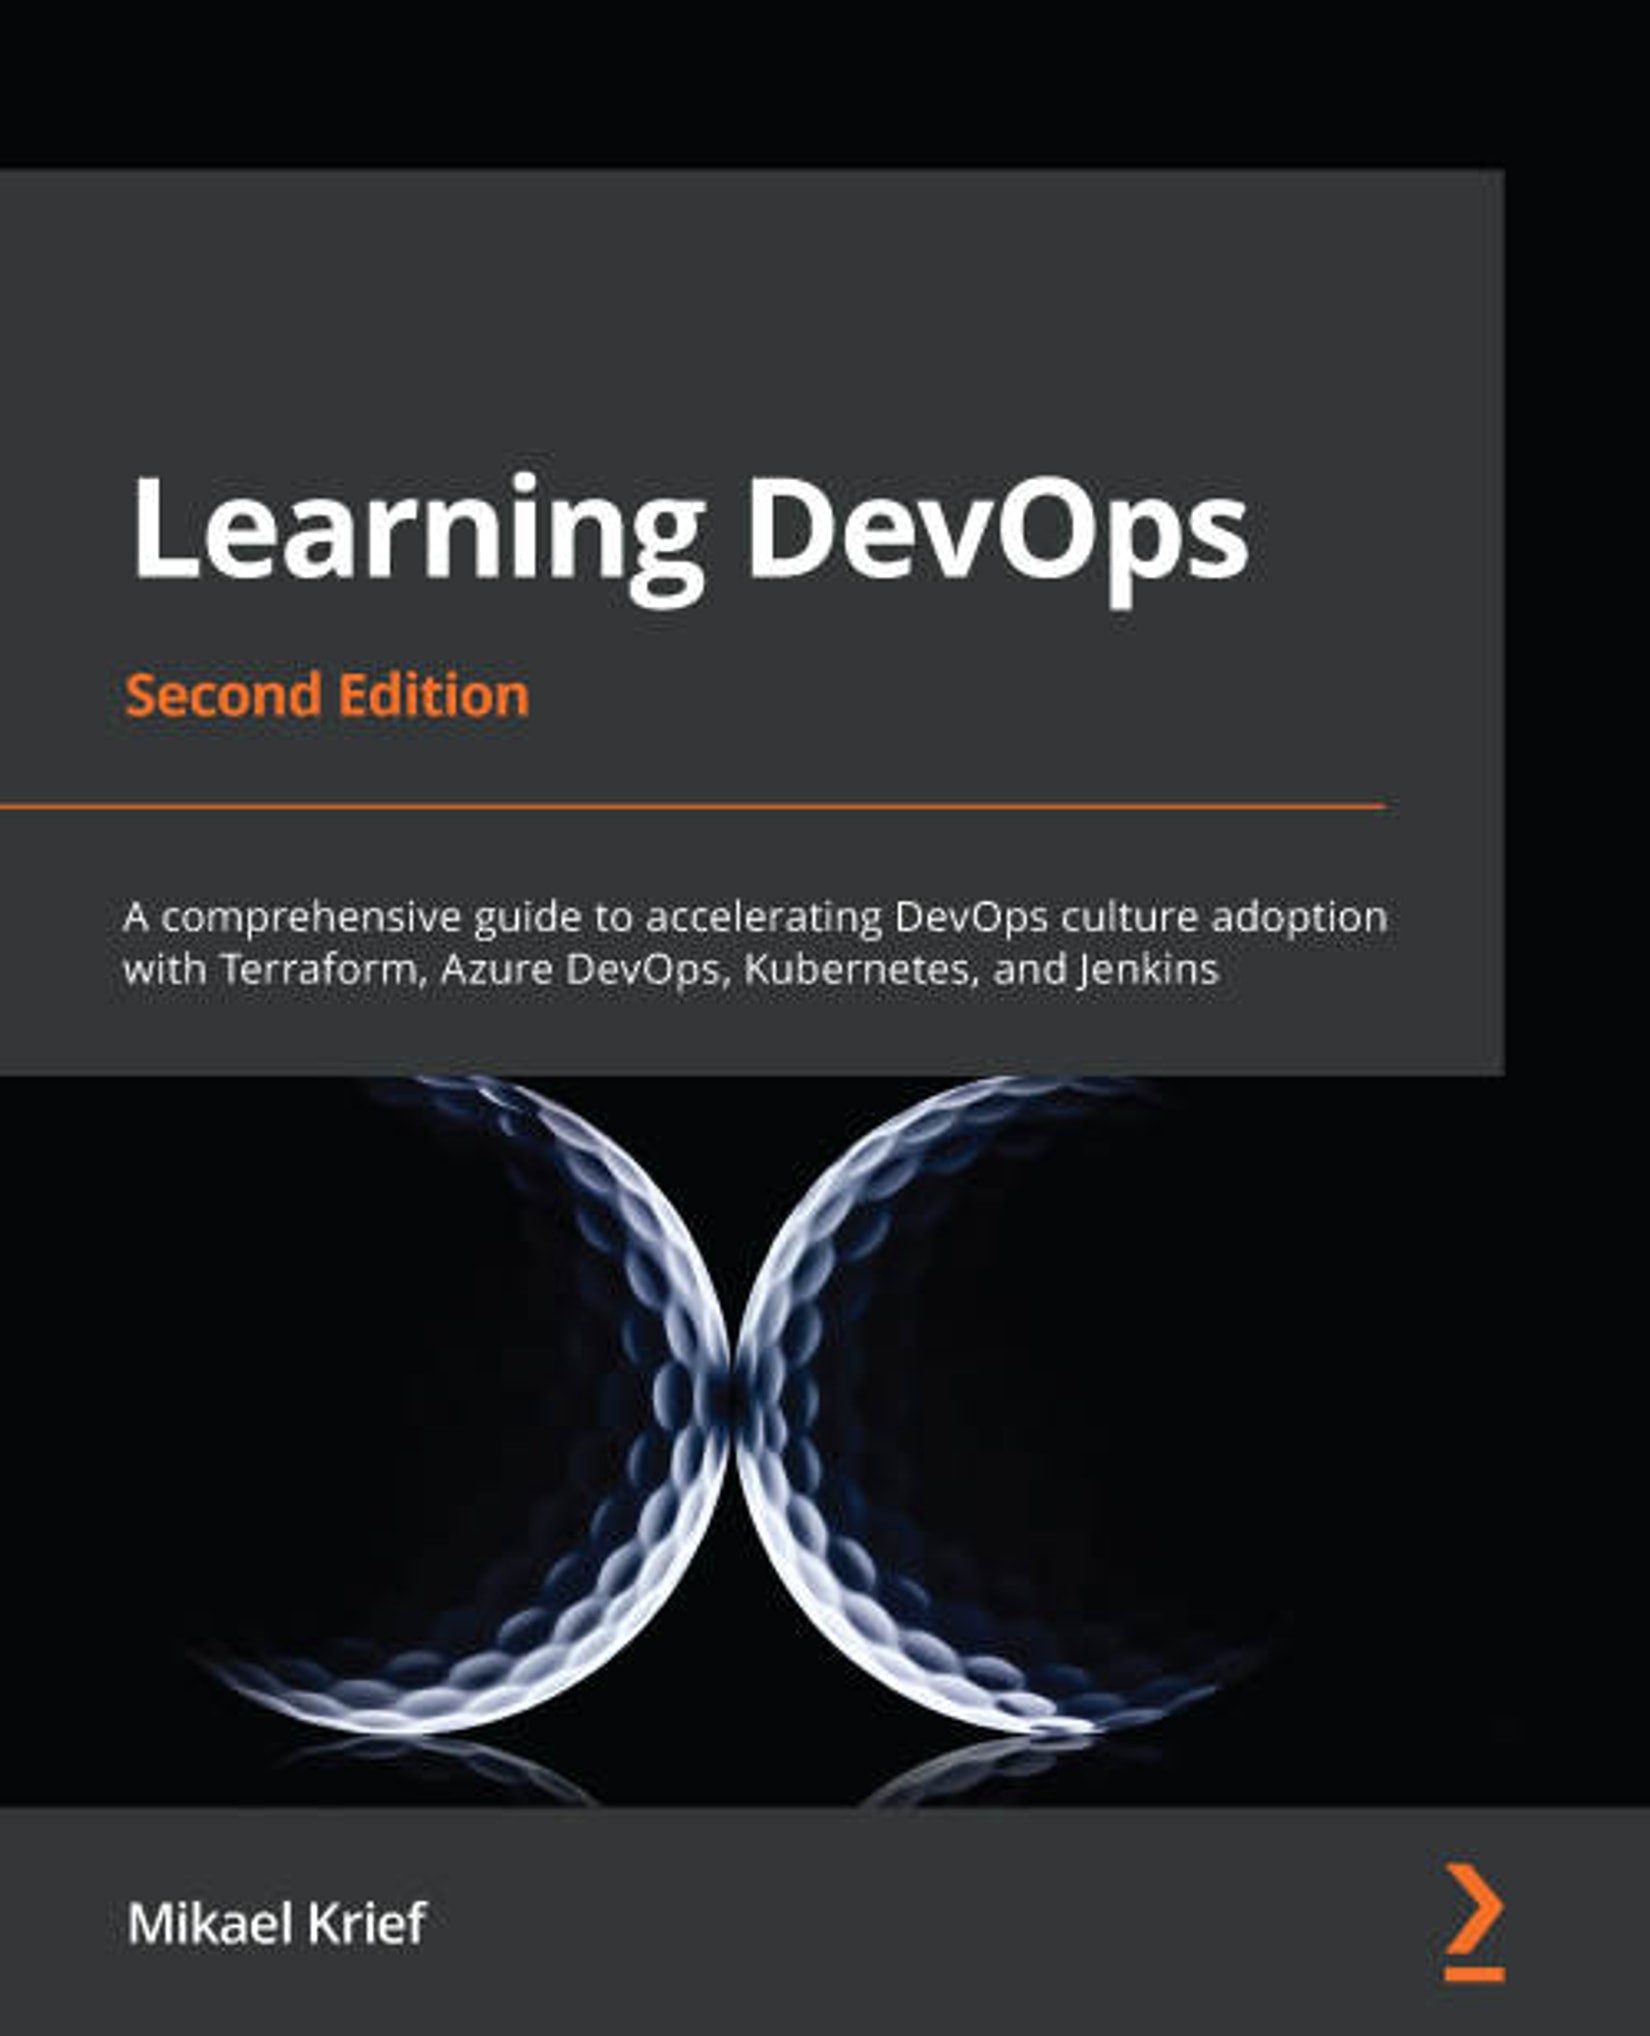 Learning DevOps: A Comprehensive Guide to Accelerating DevOps Culture Adoption With Terraform, Azure DevOps, Kubernetes, and Jenkins